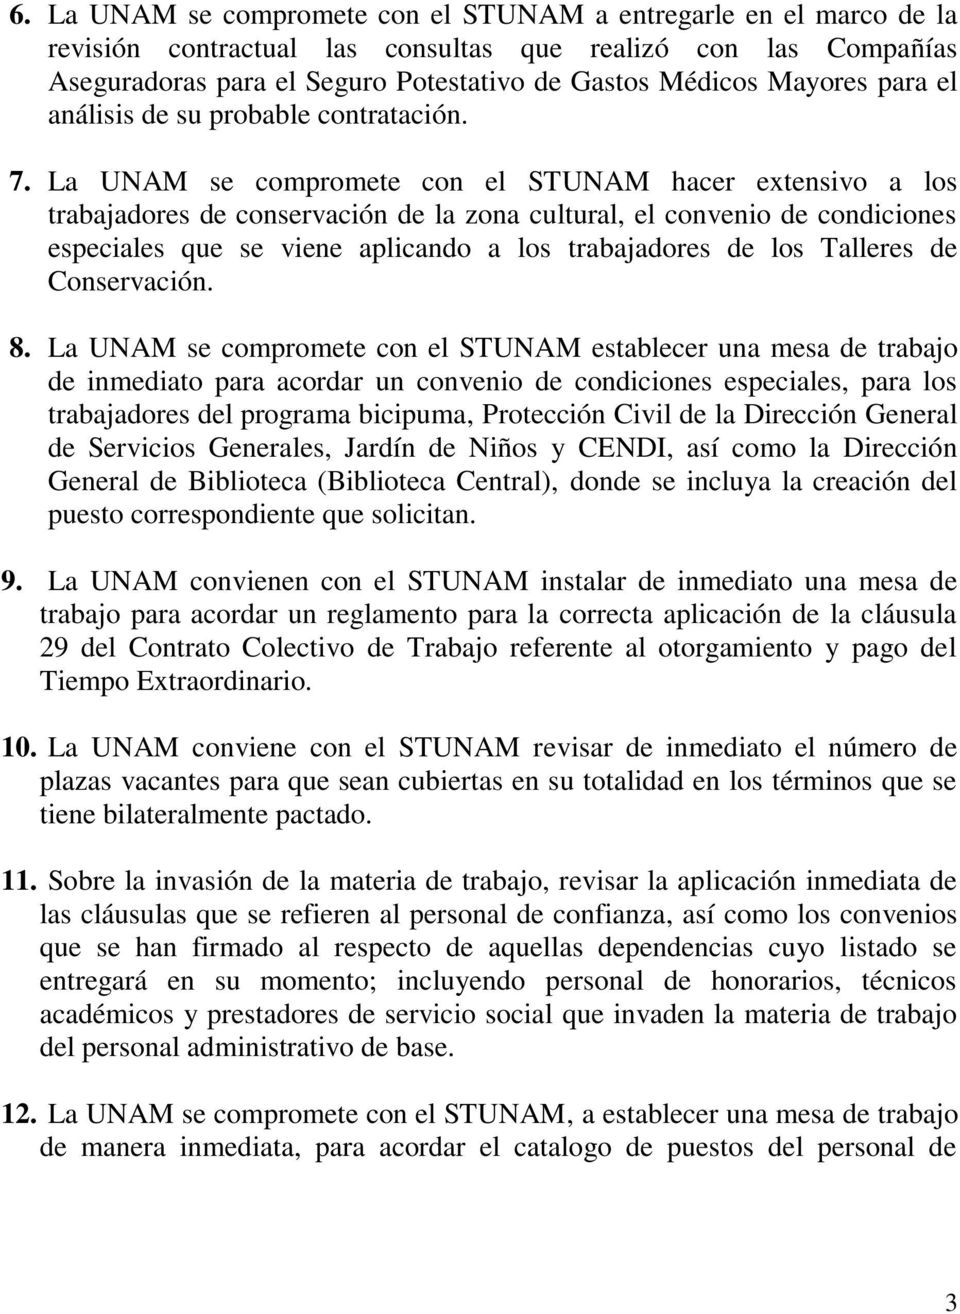 La UNAM se compromete con el STUNAM hacer extensivo a los trabajadores de conservación de la zona cultural, el convenio de condiciones especiales que se viene aplicando a los trabajadores de los